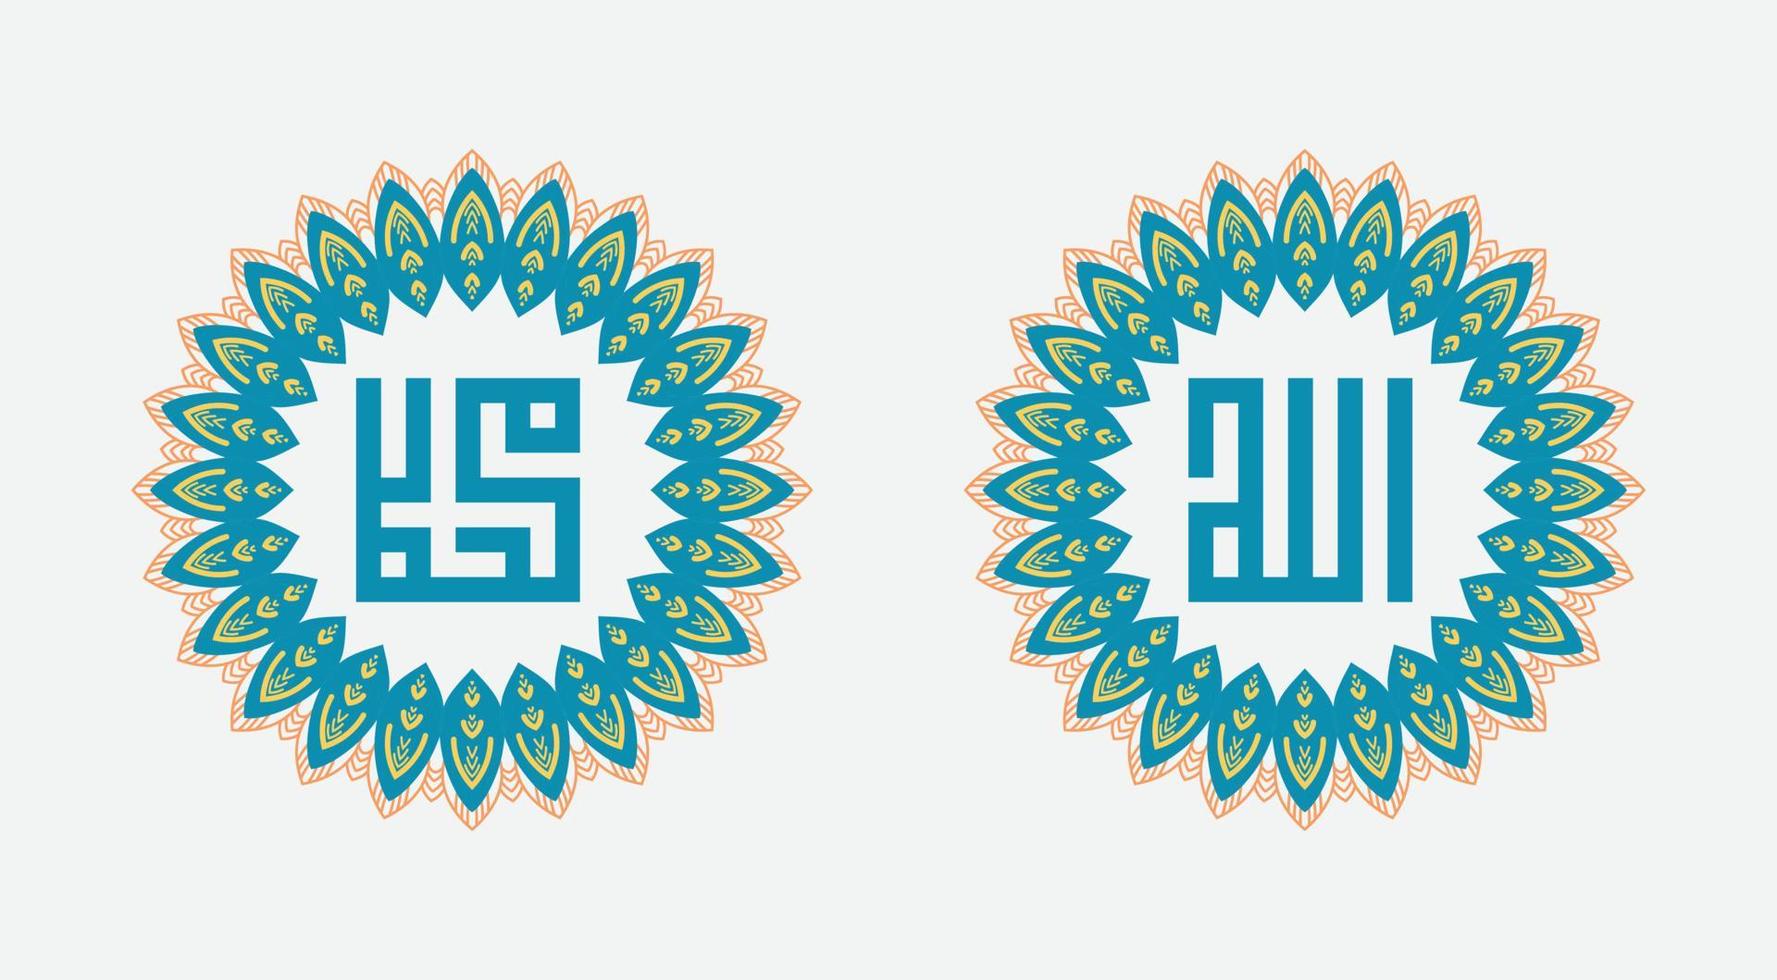 kalligrafie van allah en profeet mohammed. ornament op witte achtergrond vector